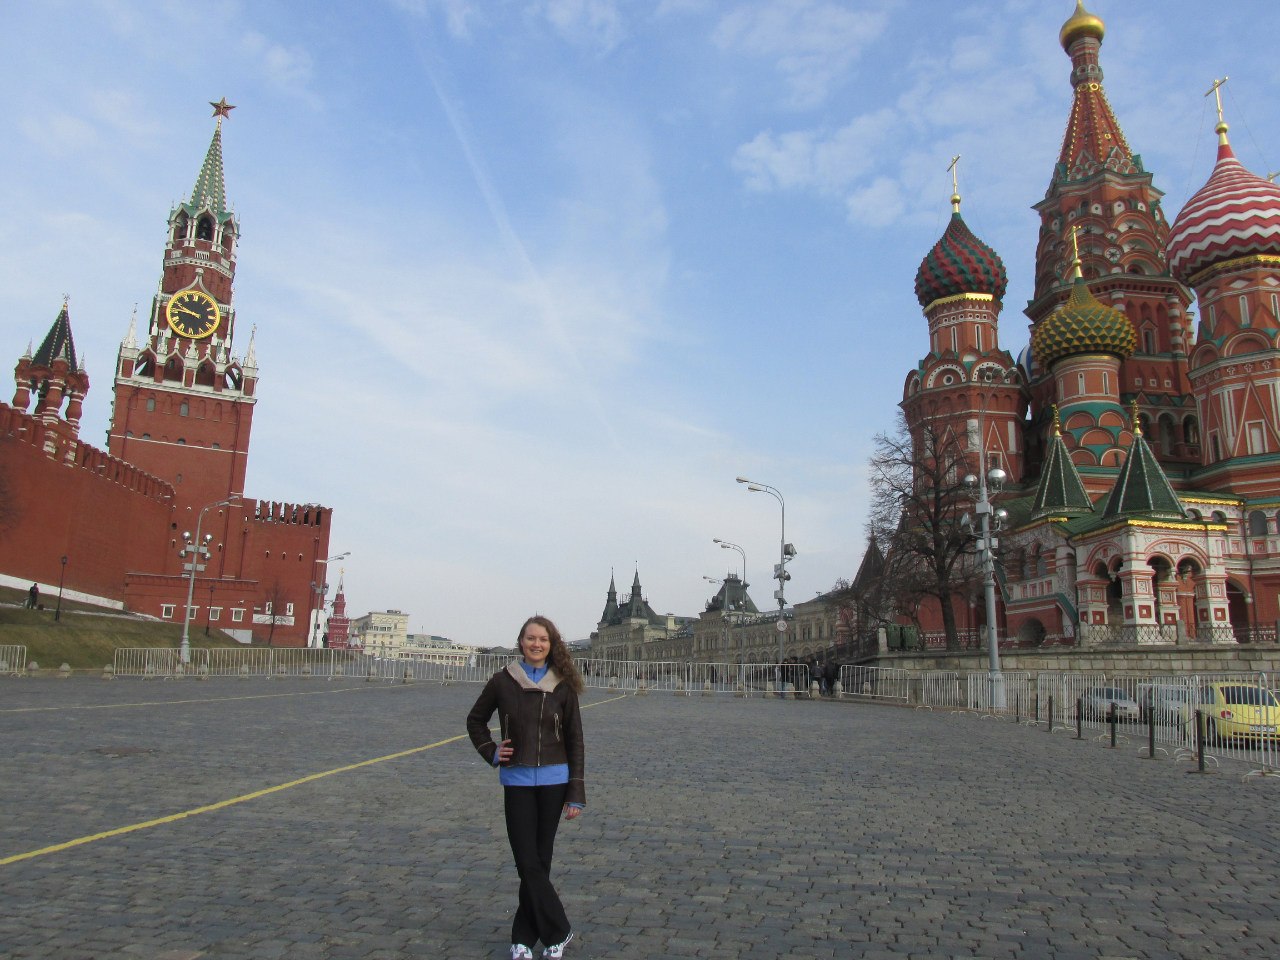 Как попасть в кремль на экскурсию